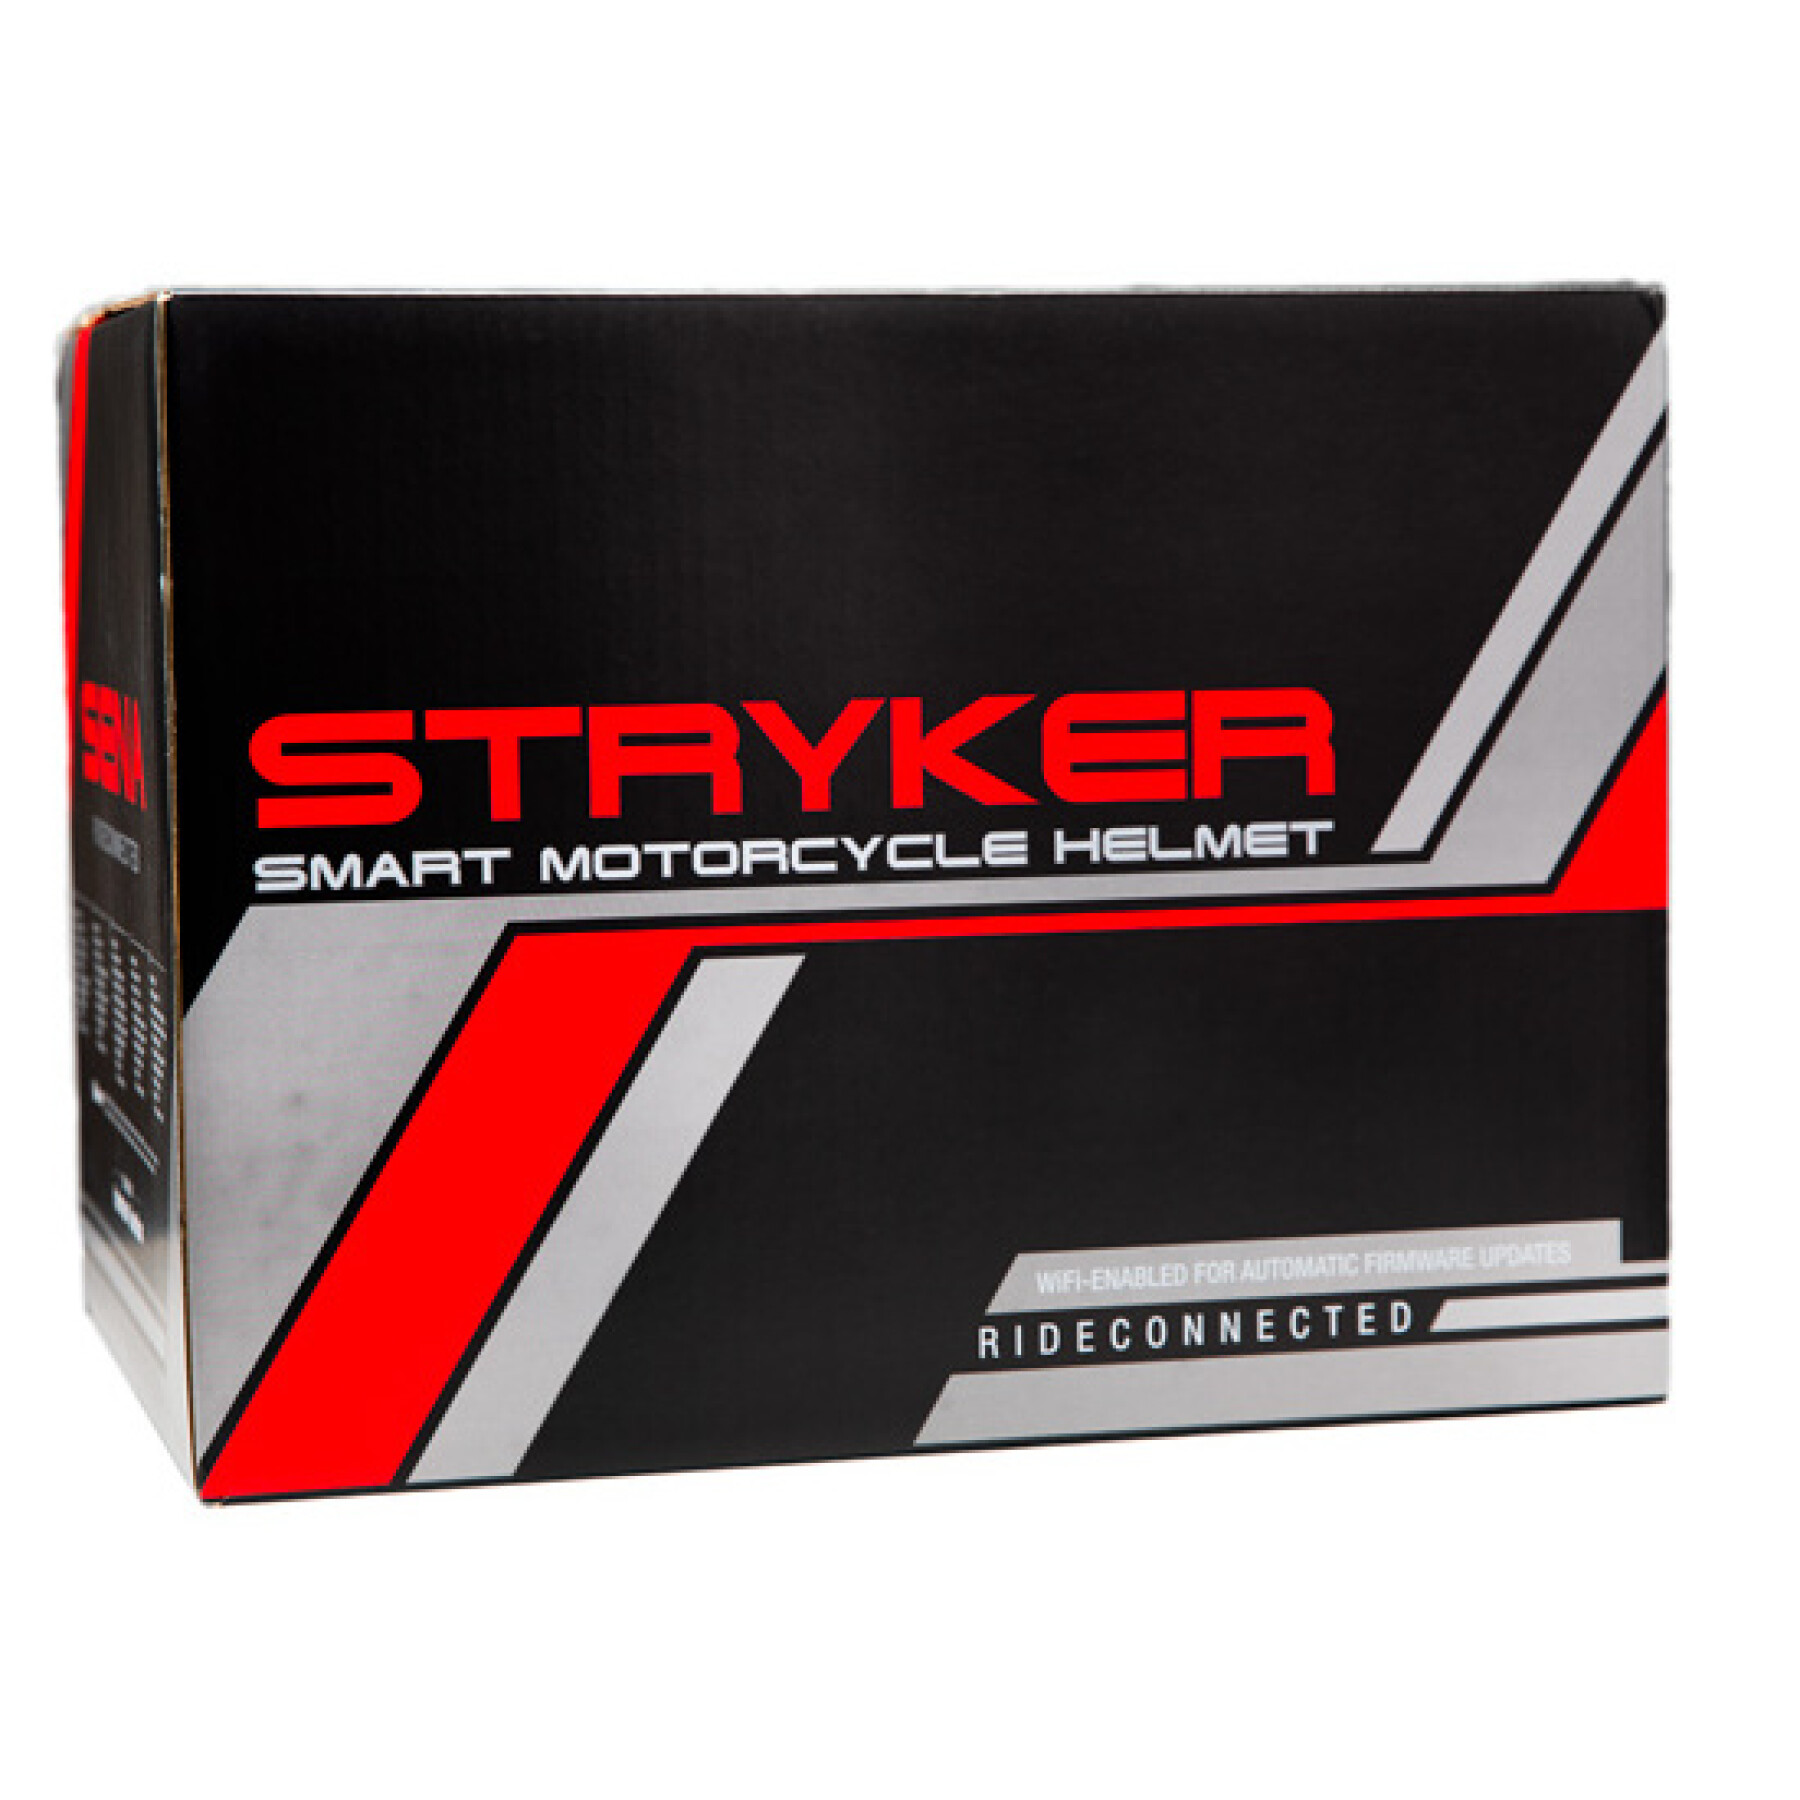 Full face motorcycle helmet Sena Stryker